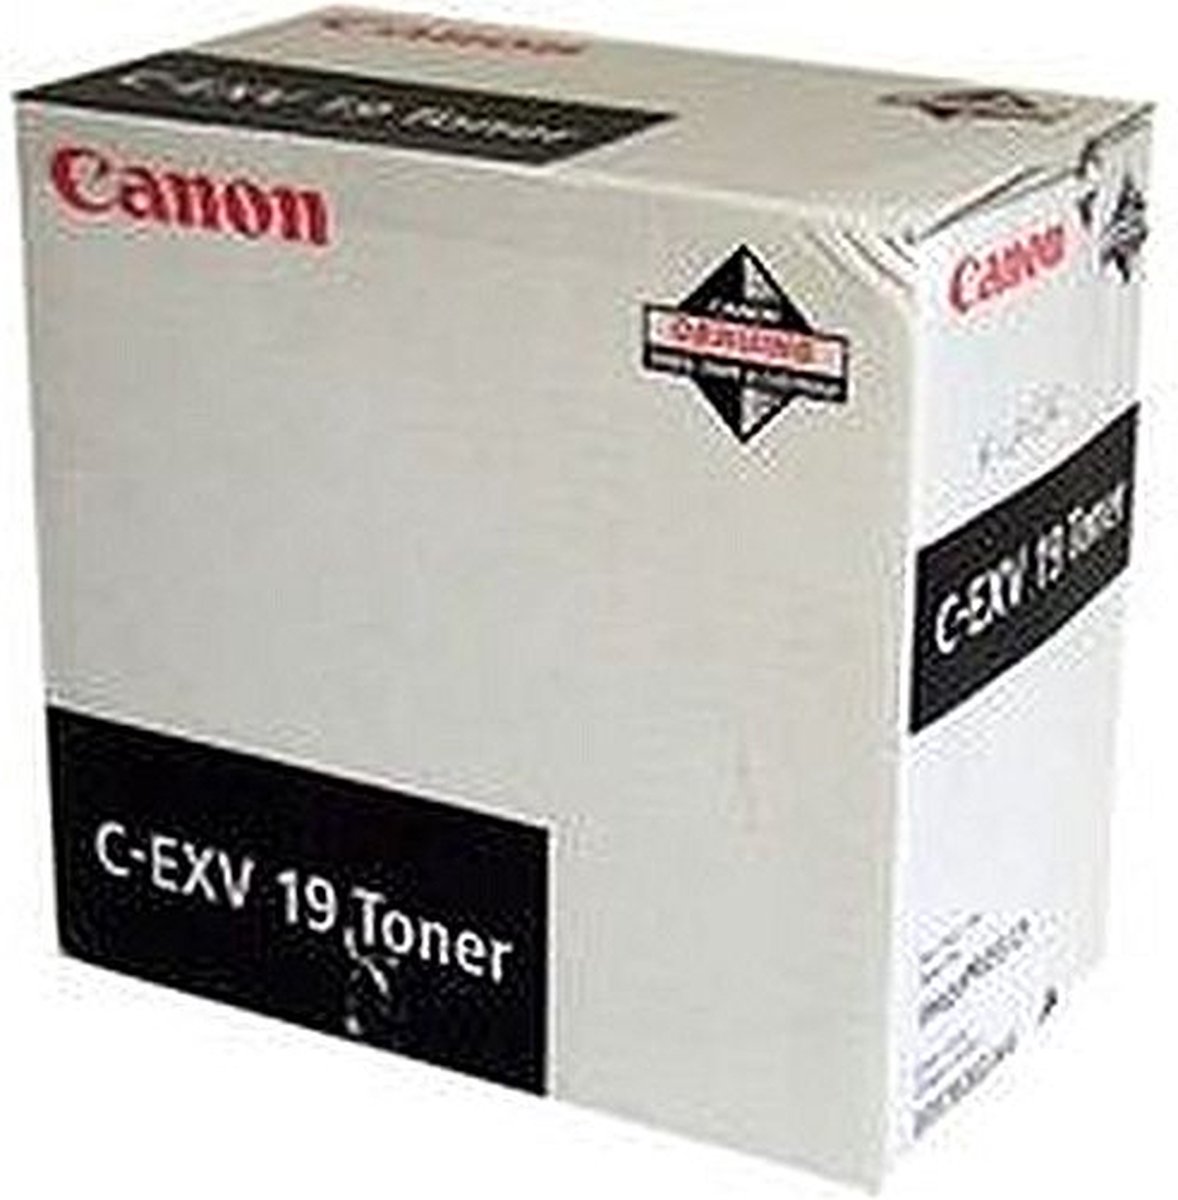 Canon CEXV-19 Tonercartridge - Zwart